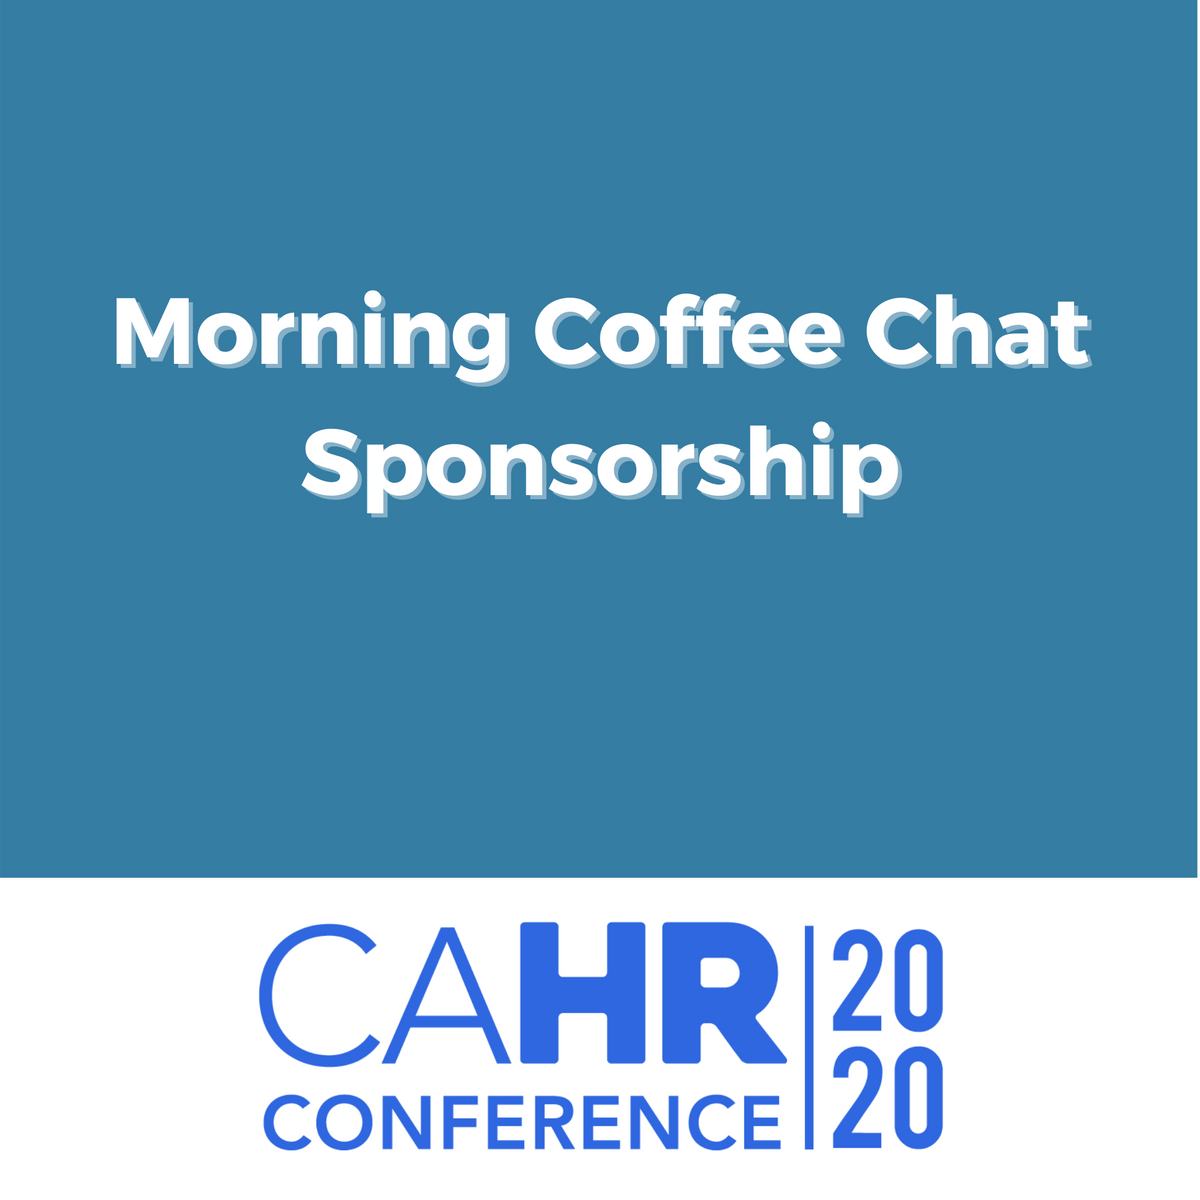 Morning Coffee Chat Sponsorship